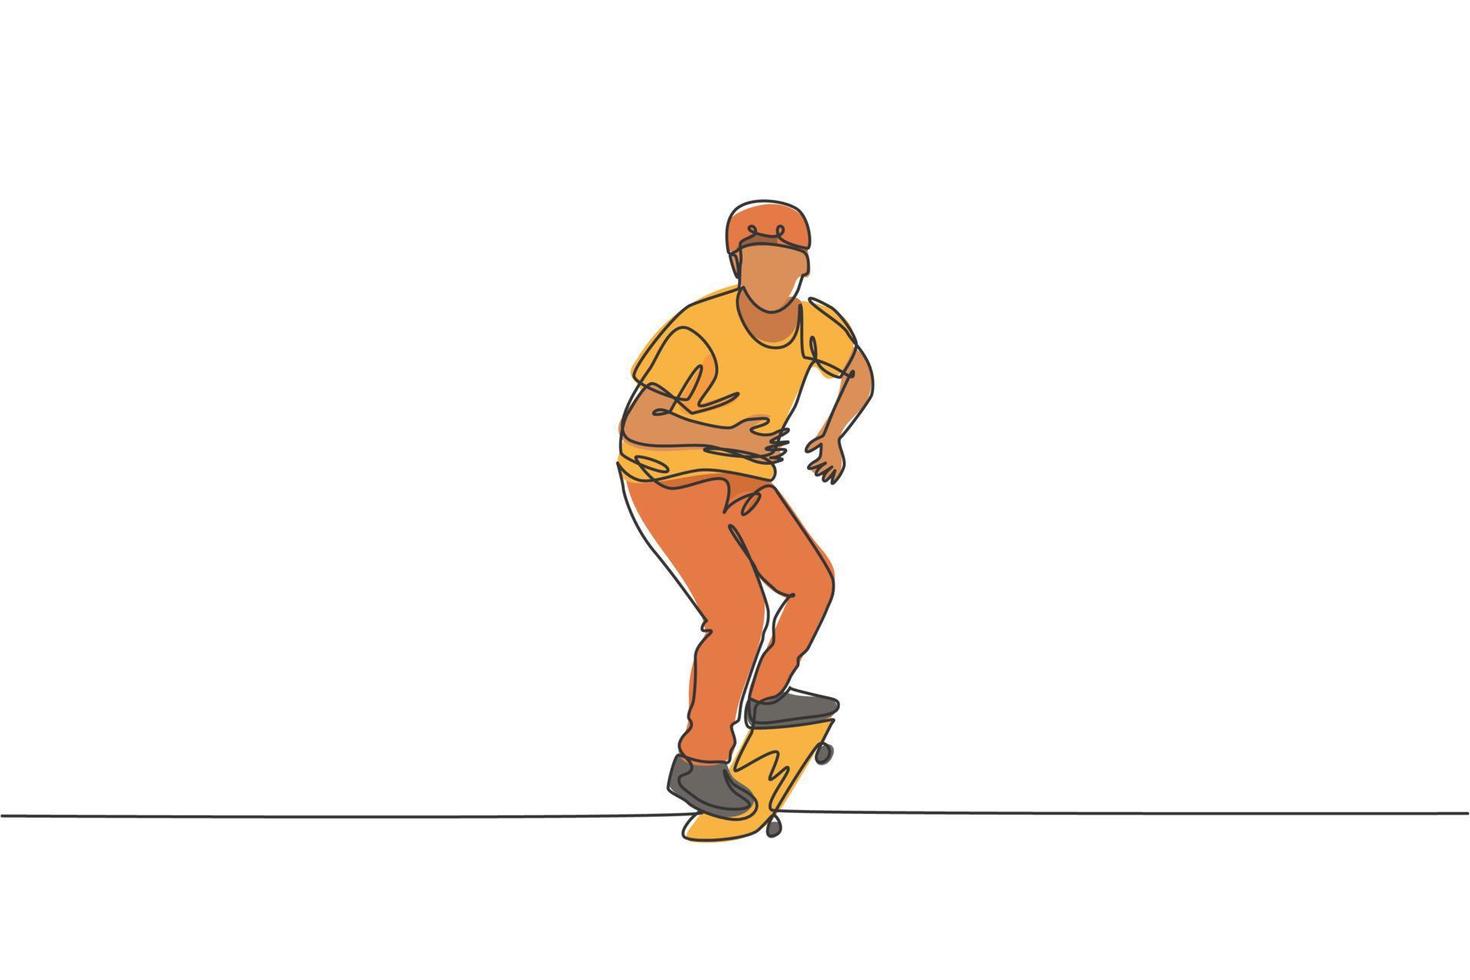 enda kontinuerlig linjeteckning av ung cool skateboardåkare man åker skate och utför trick i skatepark. utövar utomhussport koncept. trendiga en rad rita design vektorillustration grafik vektor